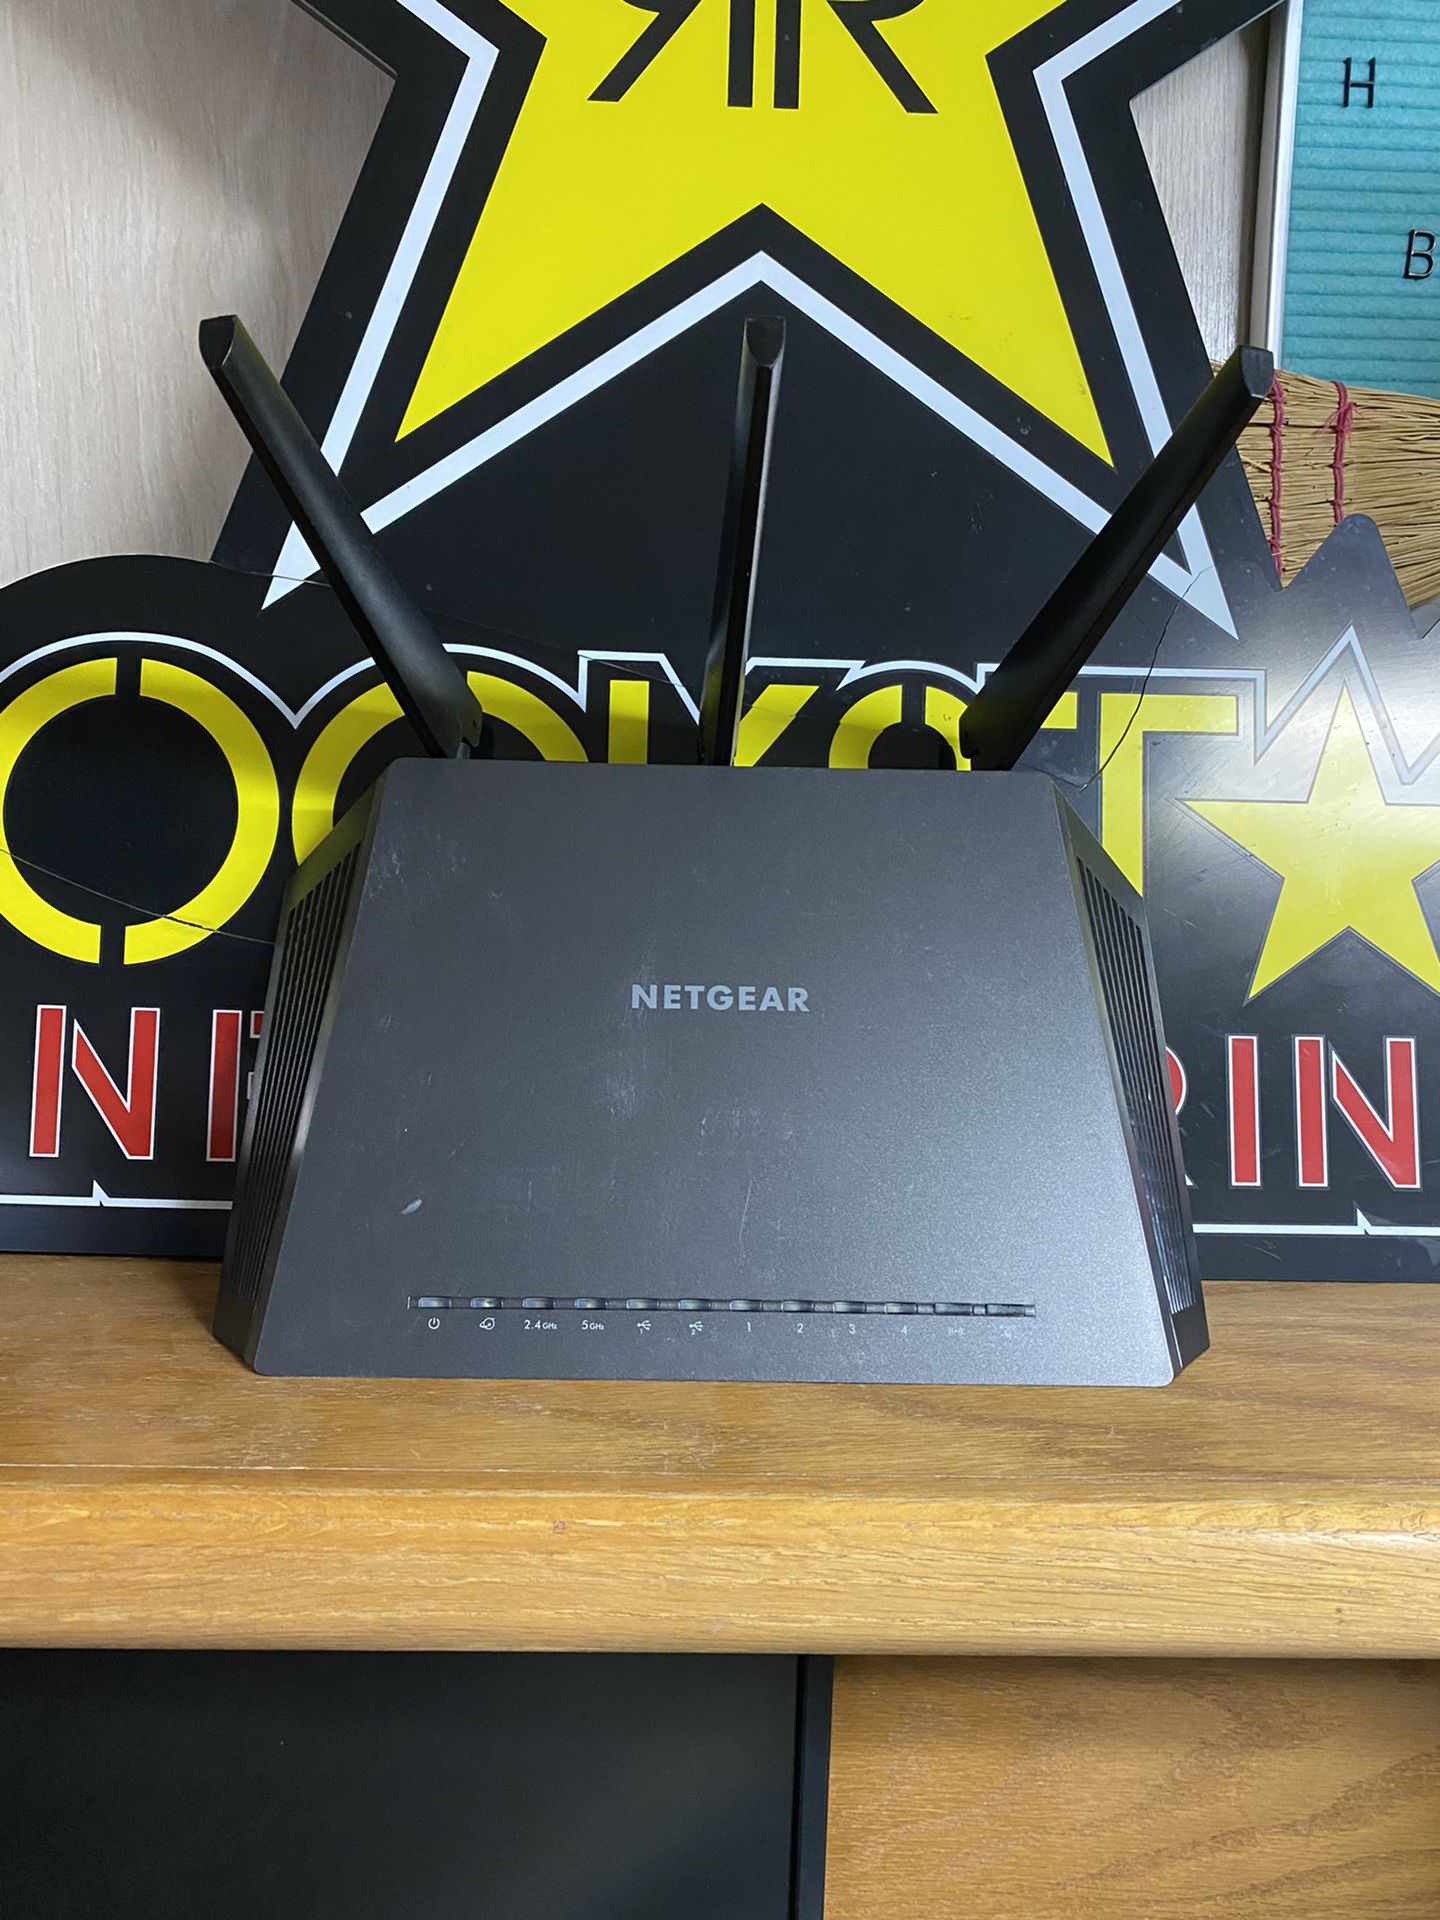 NETGEAR NIGHTHAWK R7000 AC1900 WiFi Router